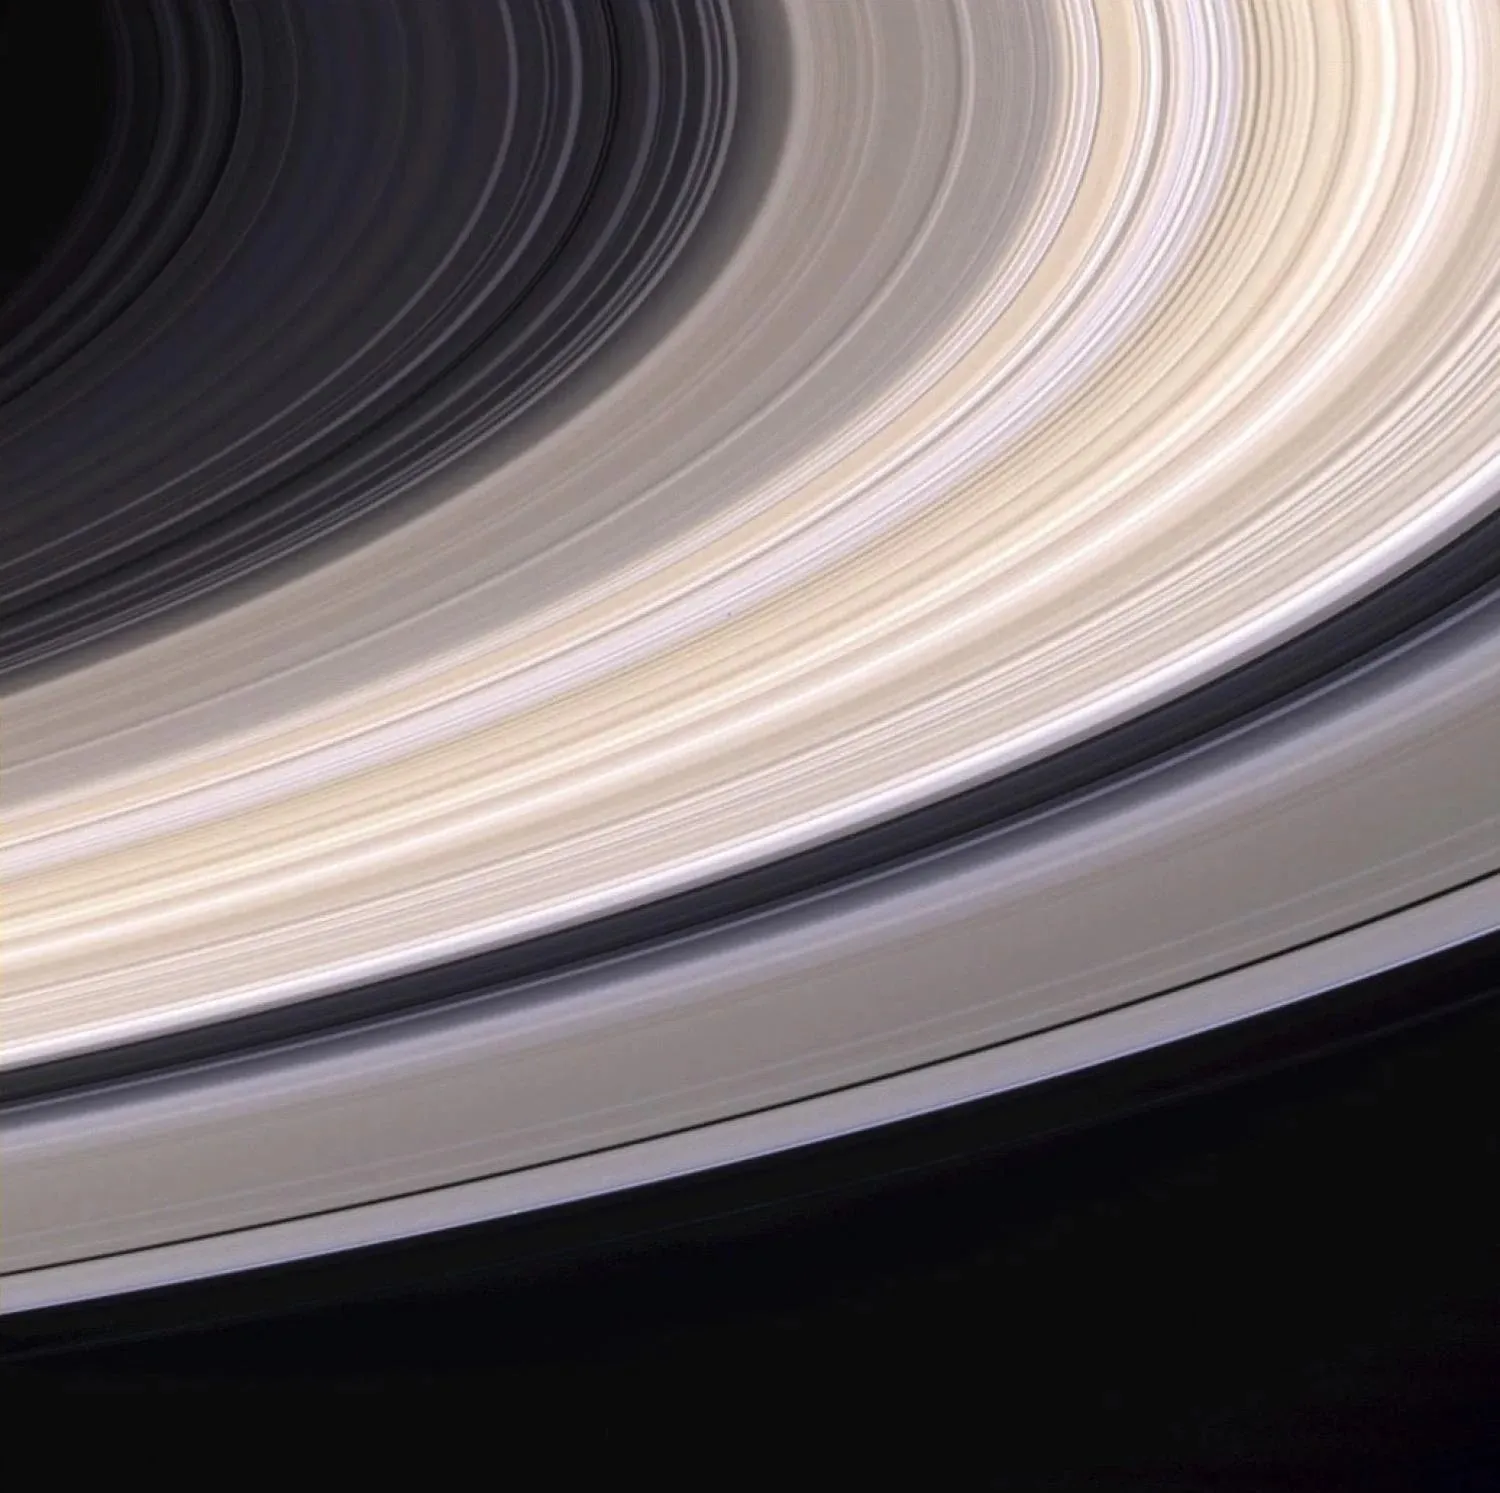 土星环的条纹颜色可能来自于被困在环冰中的少量杂质所造成。Saturn's rings may get their striated colors from the small concentrations of contaminates that become trapped in the rings' ice. (Credit: NASA/JPL/Space Science Institute)